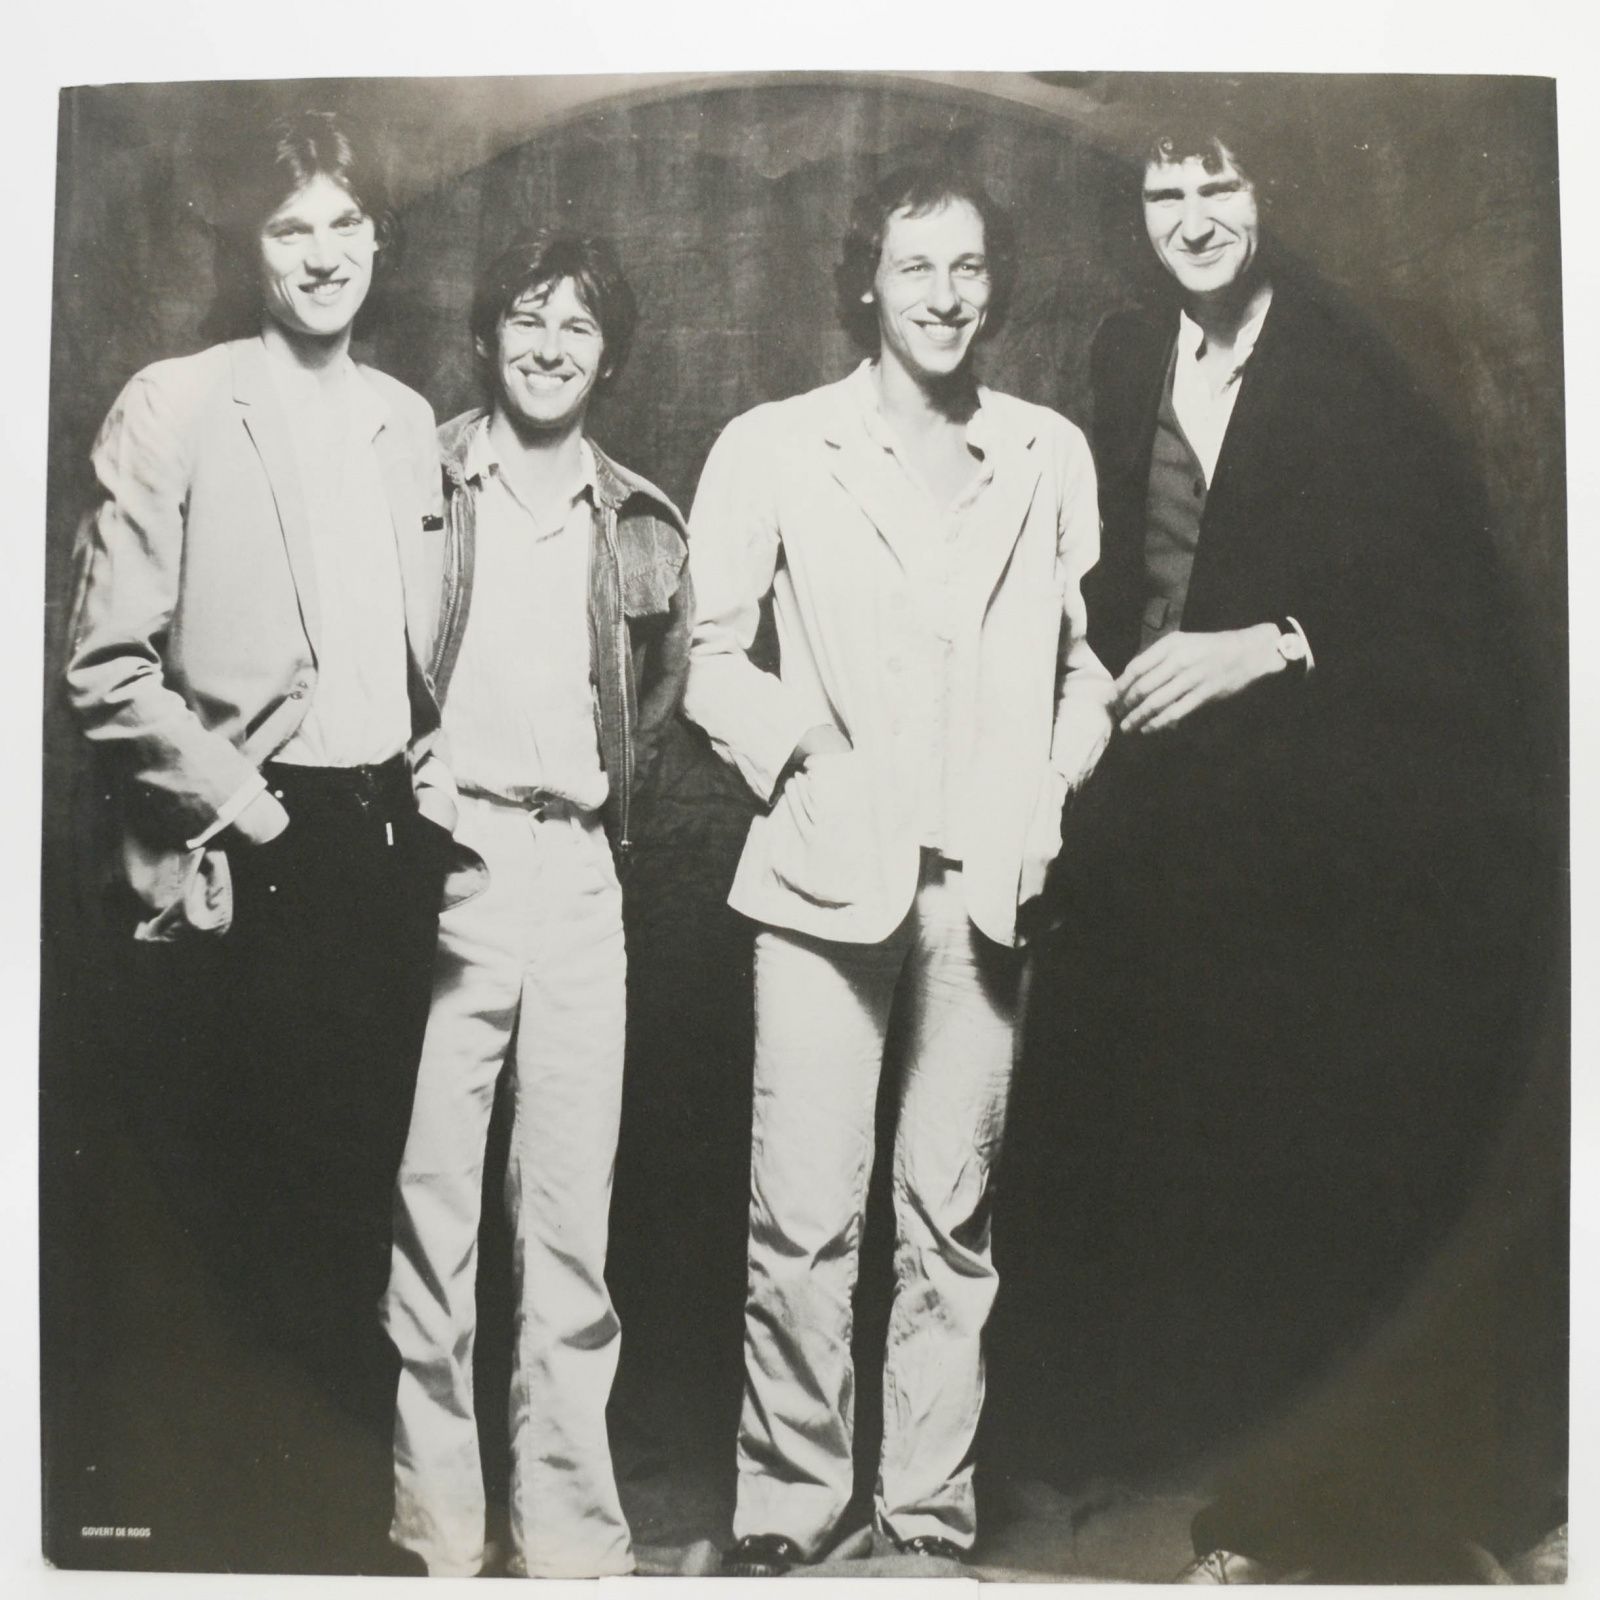 Dire Straits — Communiqué, 1979